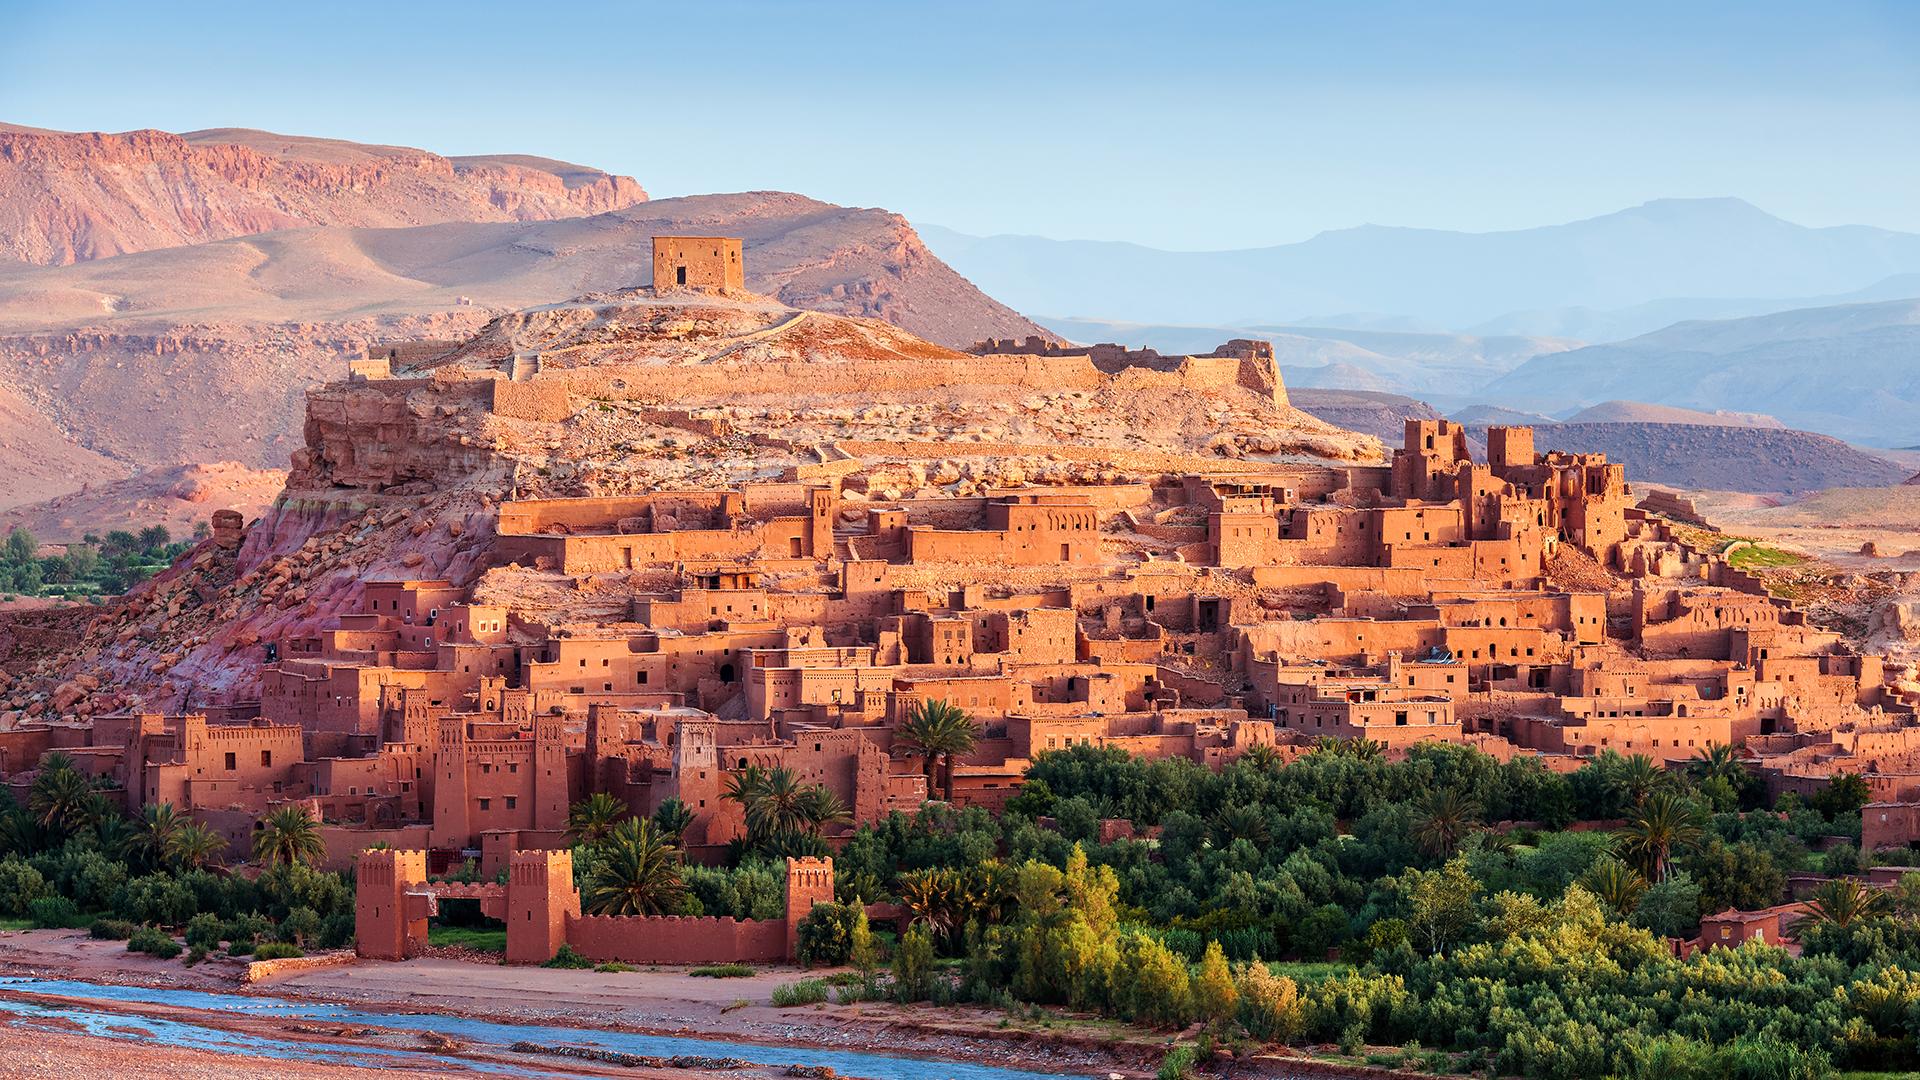 Ksar Aït Benhaddou in Morocco / Unesco World Heritage 